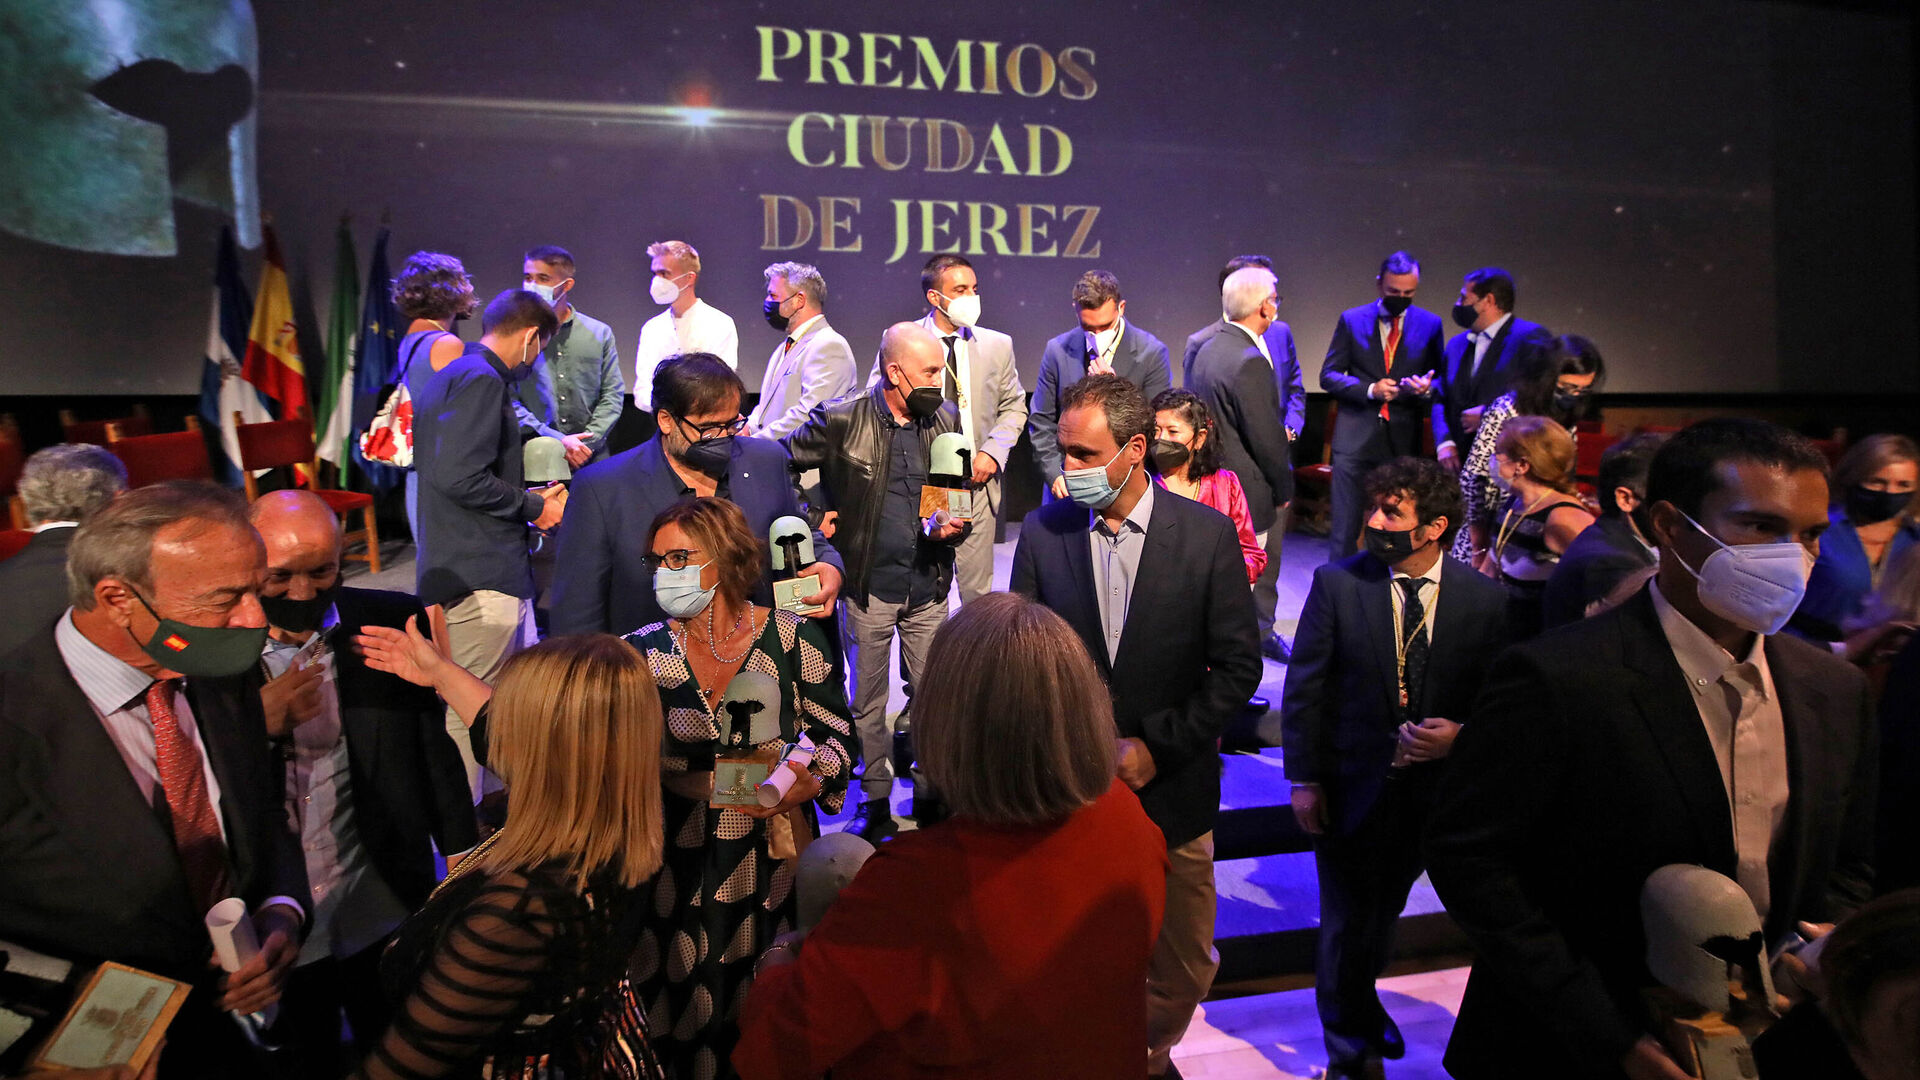 Los Premios Ciudad de Jerez 2021